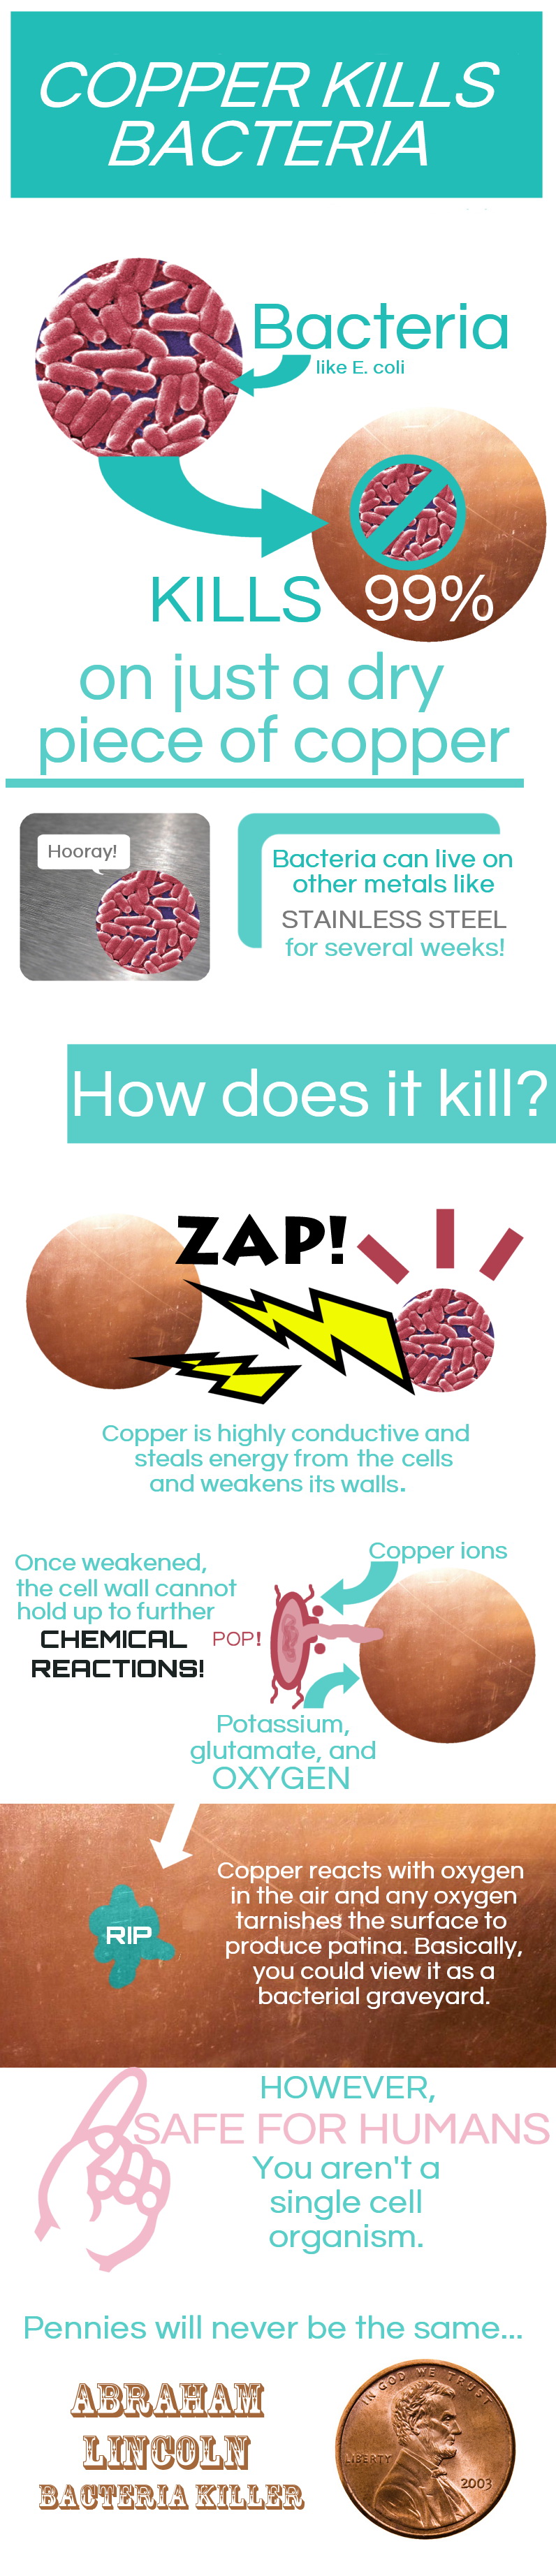 Cooper materials benefits